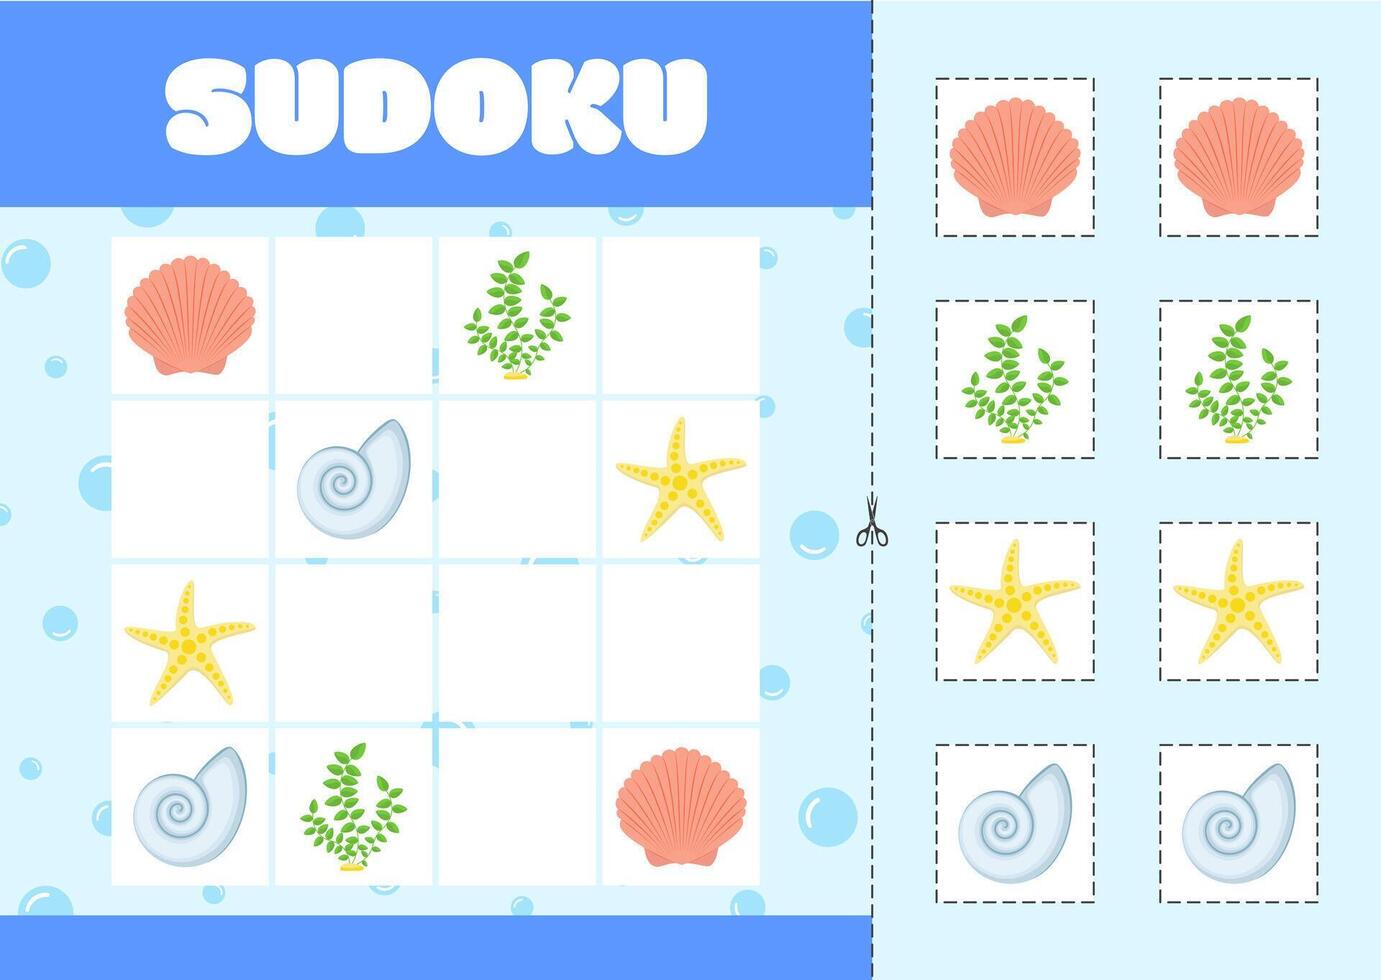 para niños lógica juego - sudoku con imágenes en un marina tema. algas, conchas vector